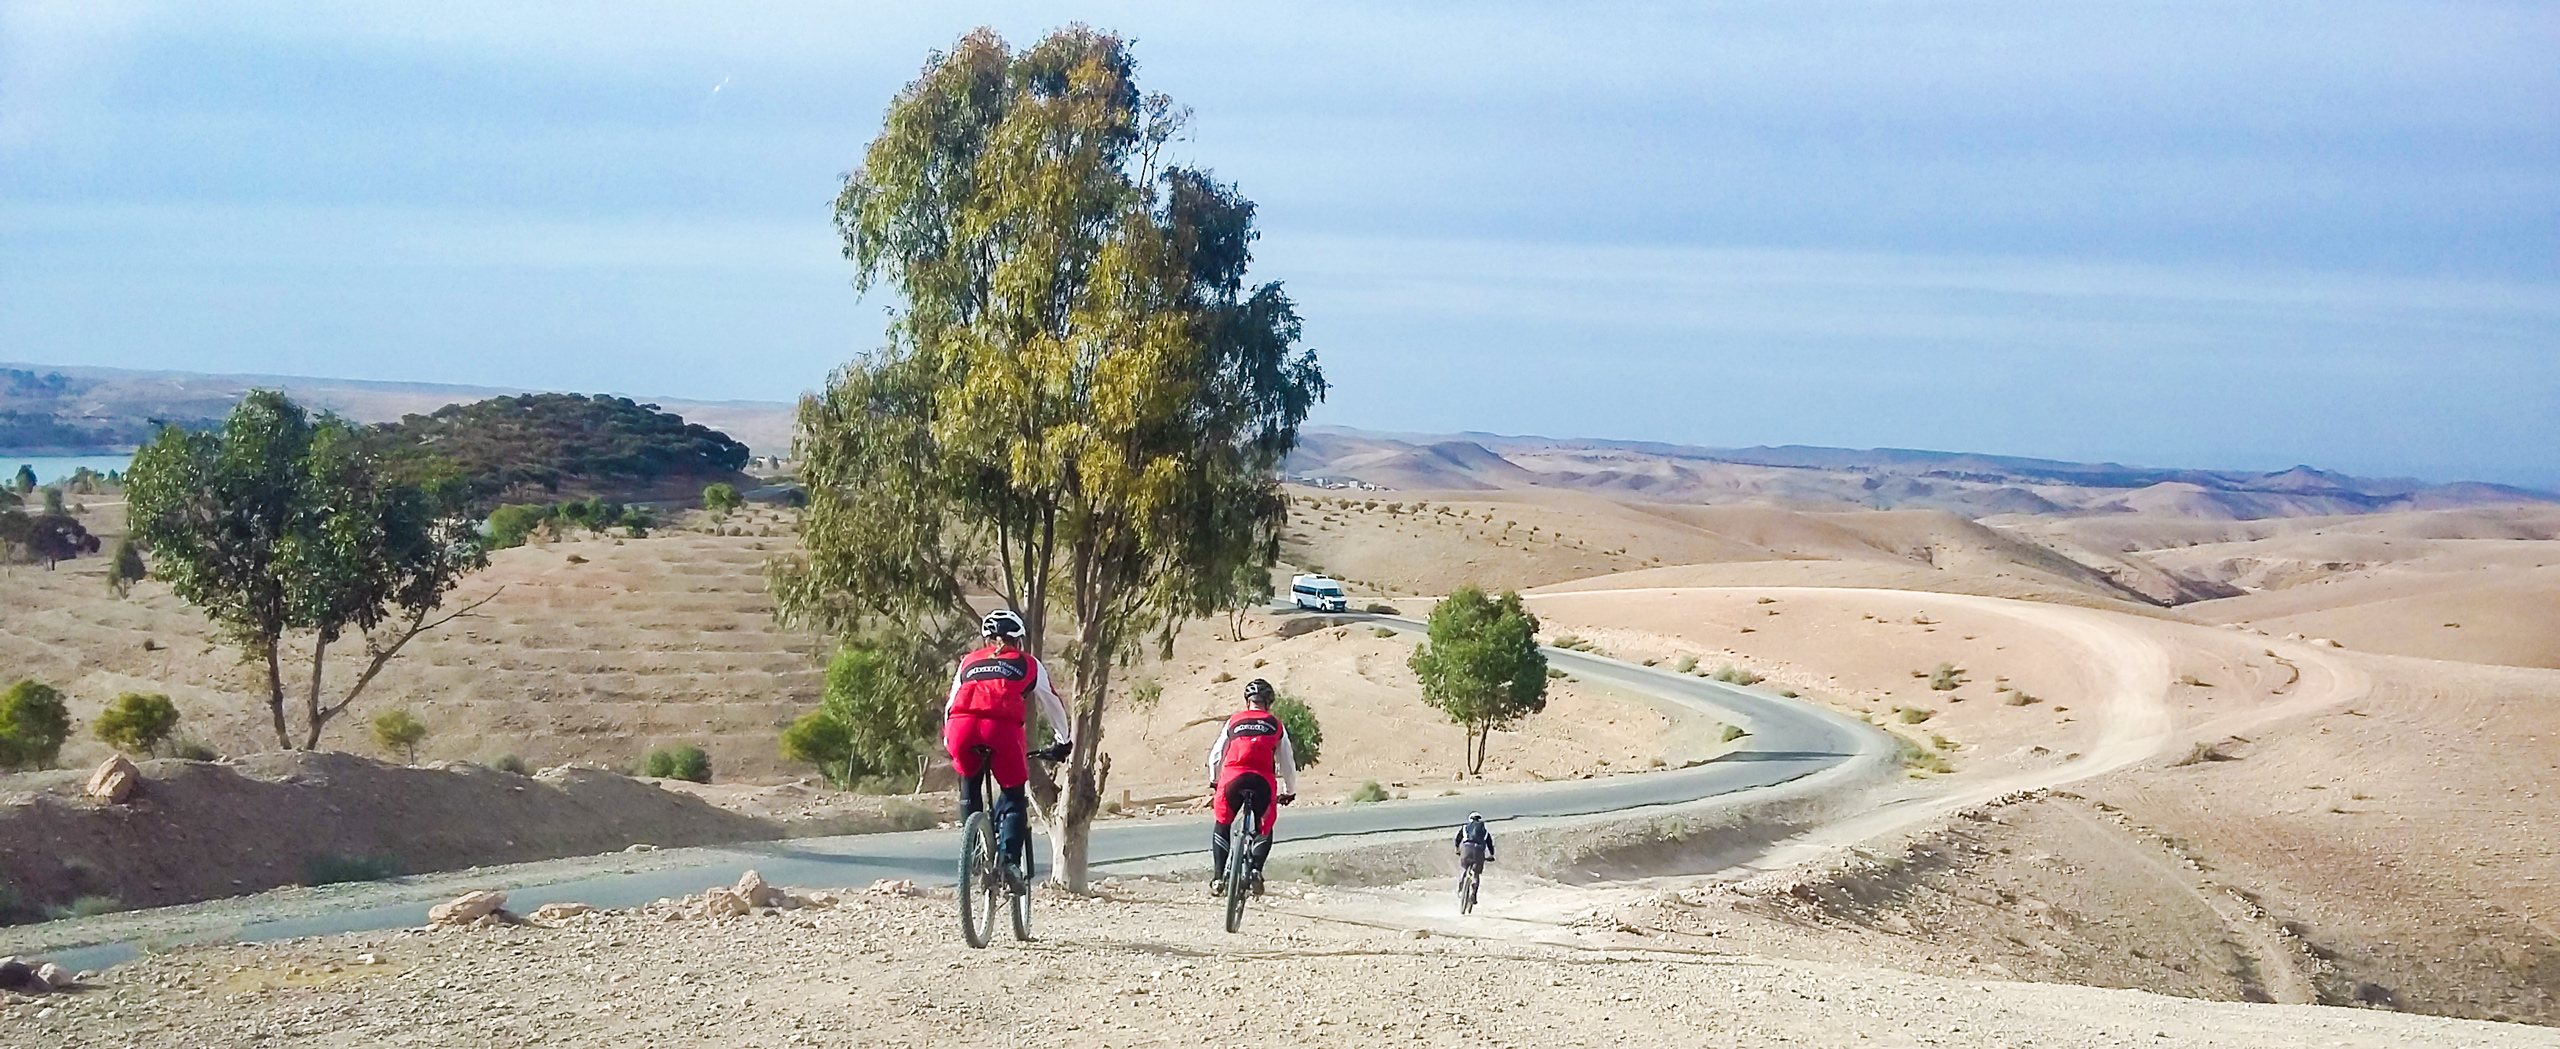 Singletrack Biking in Morocco